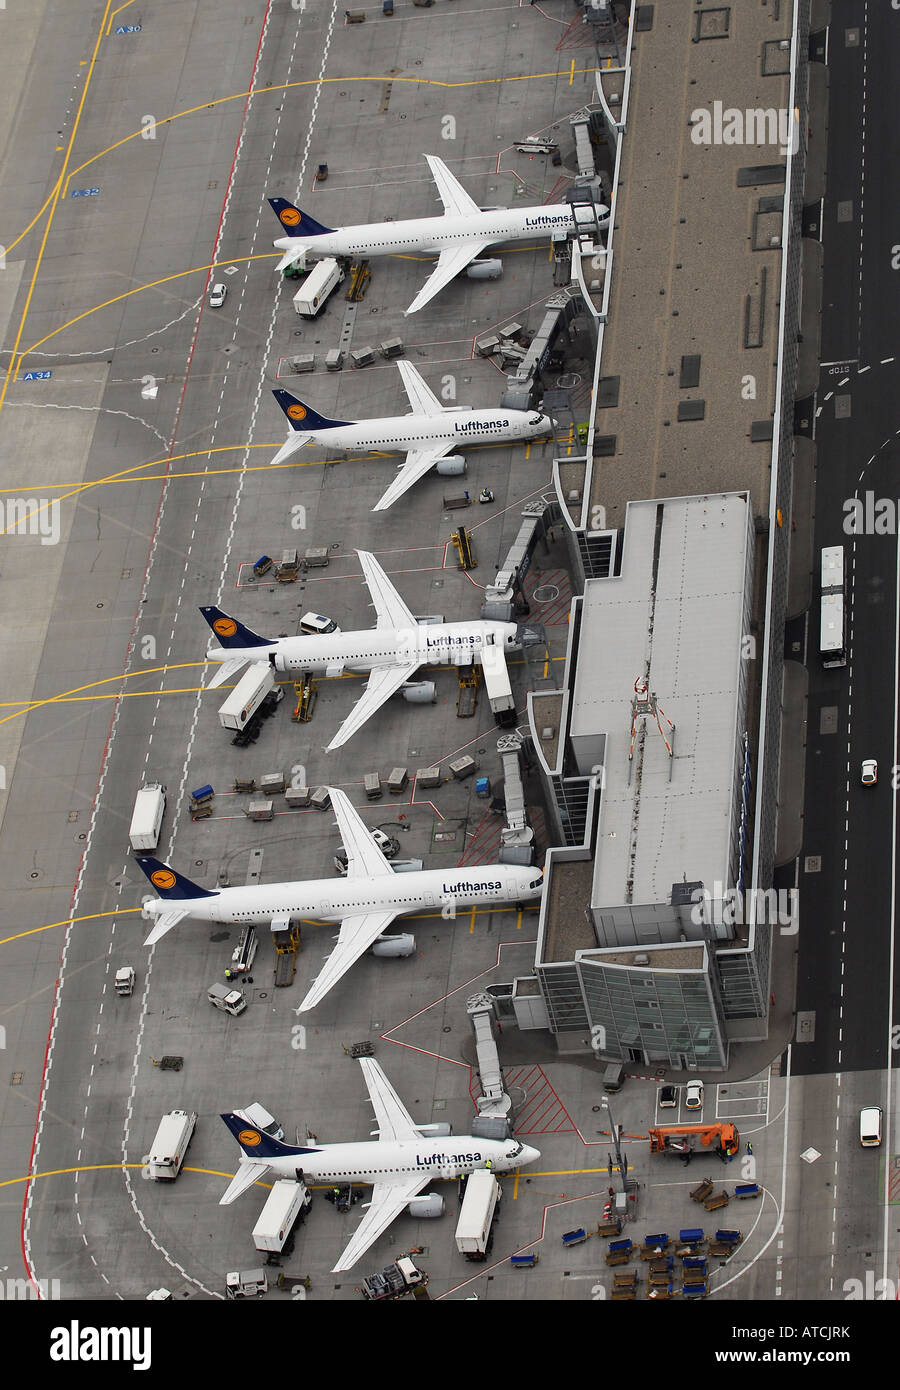 Luftbild des Flughafens in Frankfurt am Main, Deutschland Stockfoto